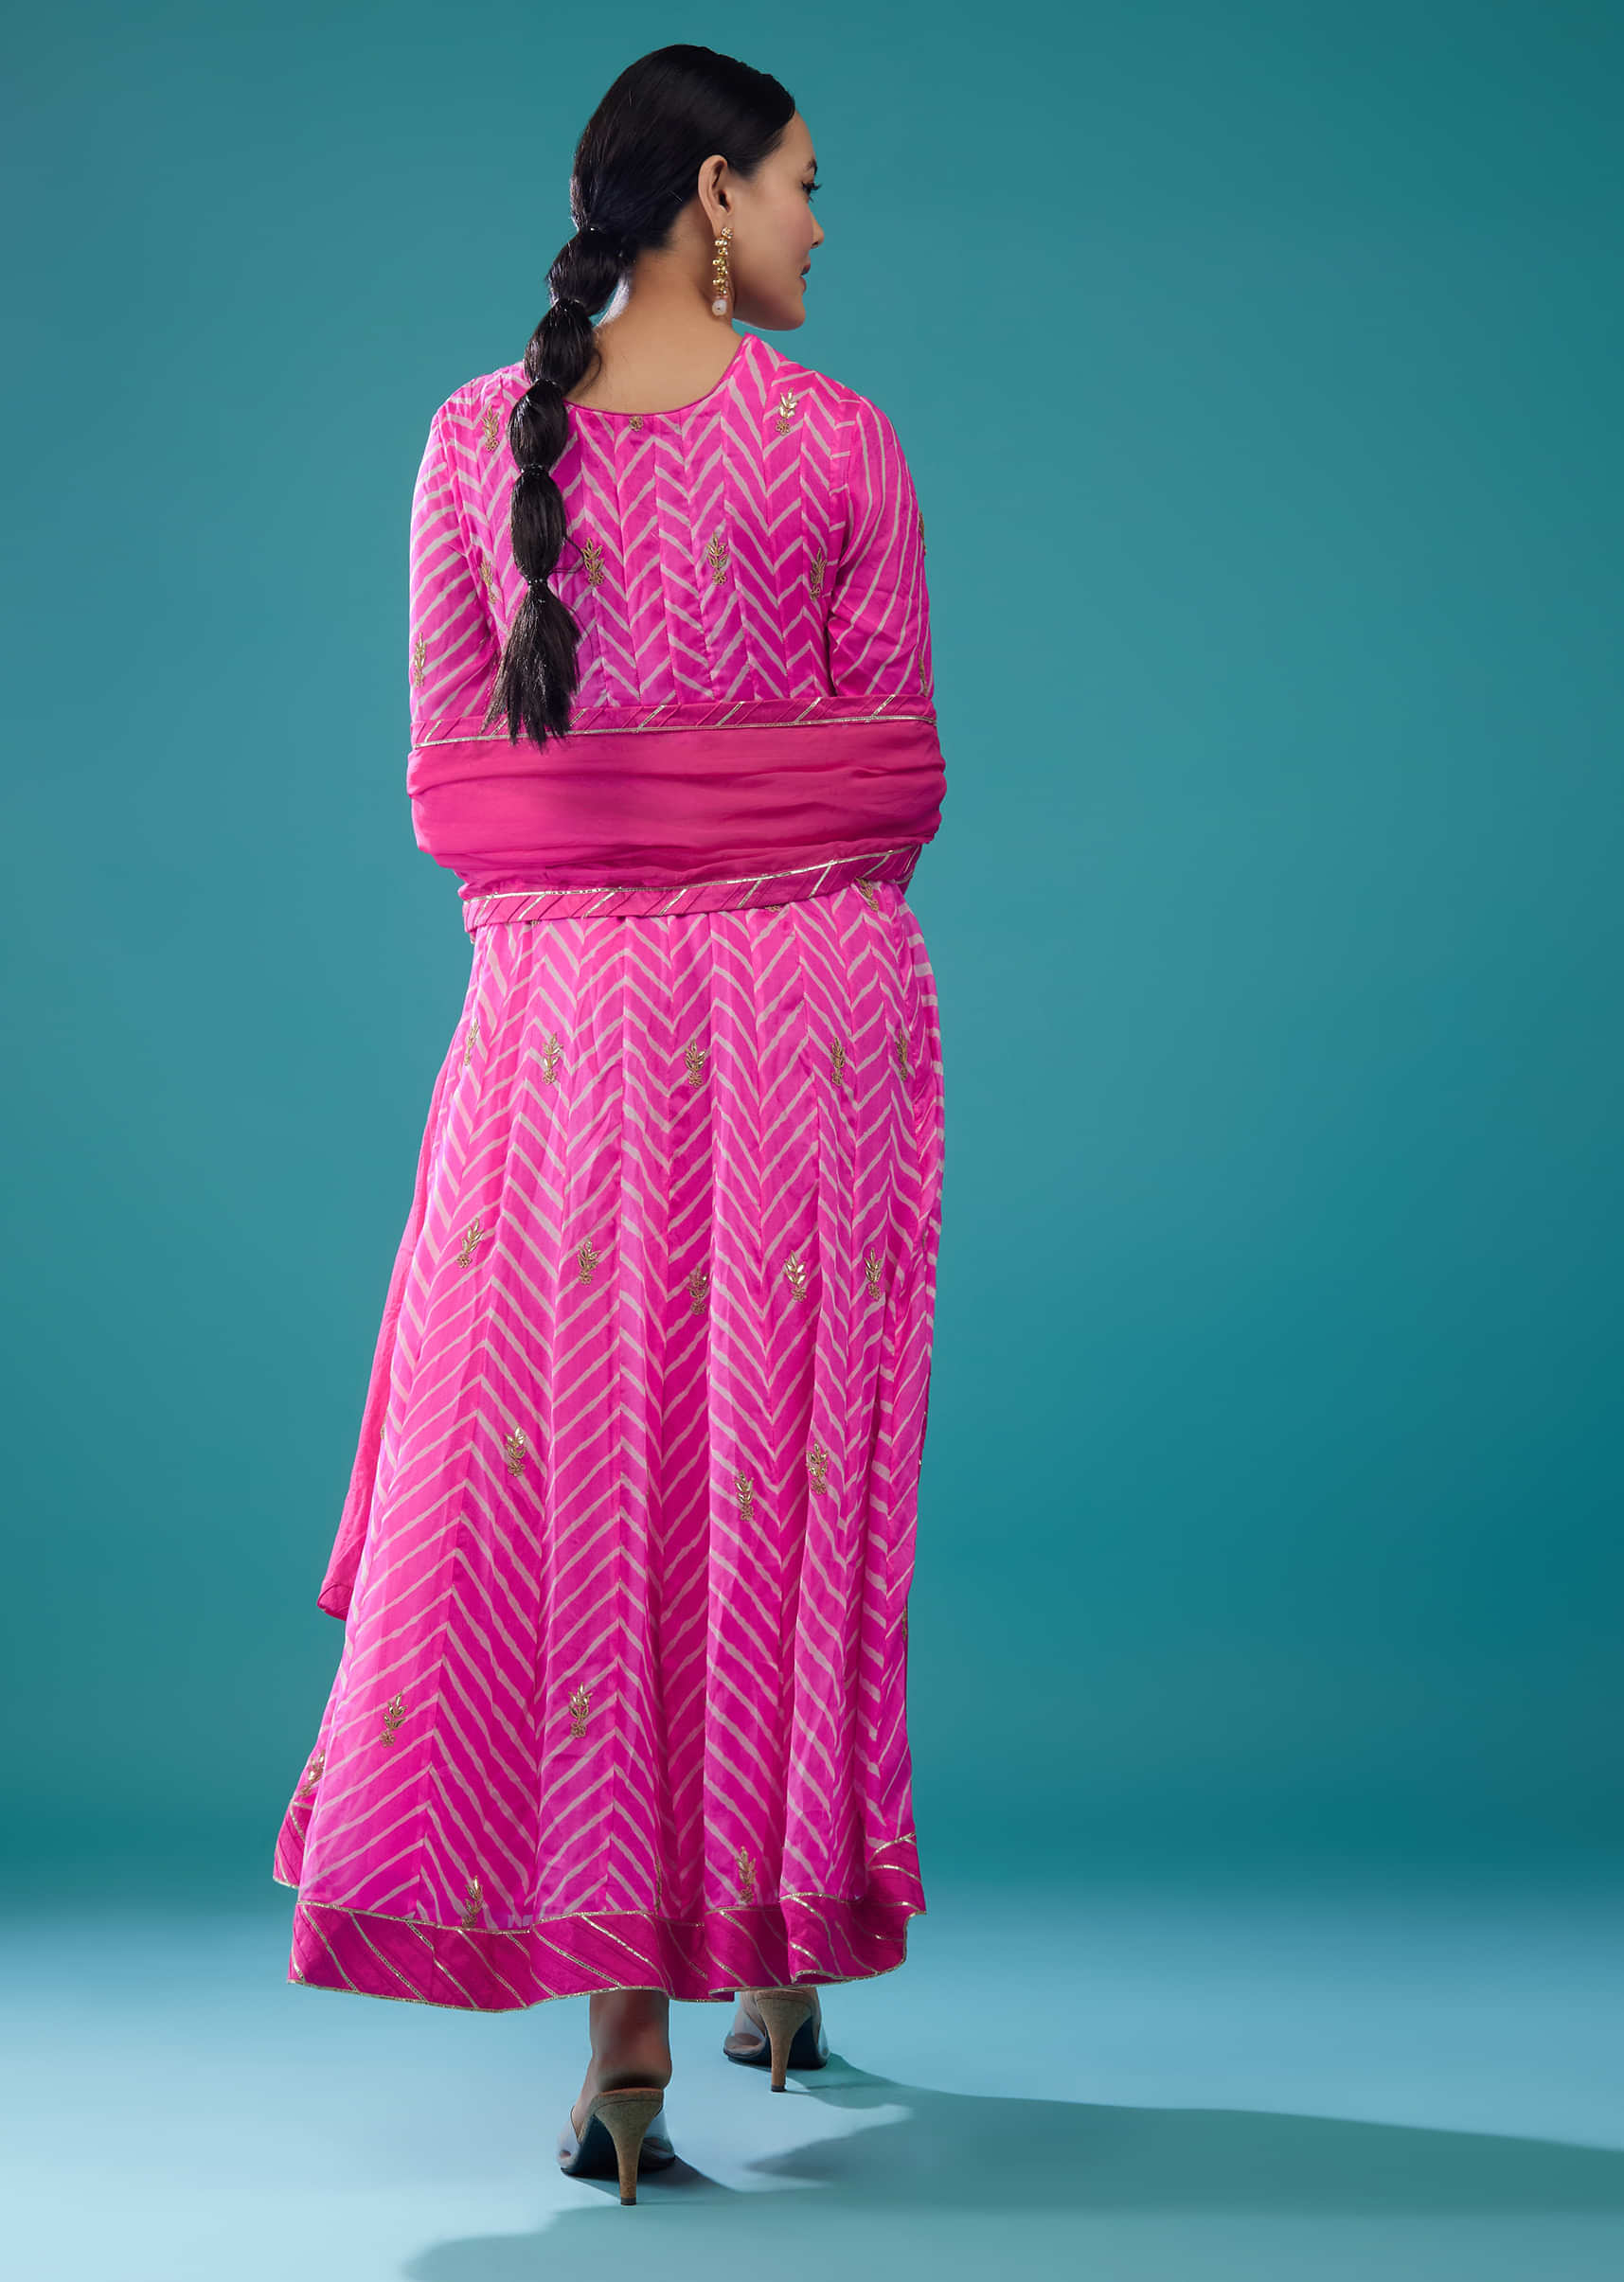 Hot Pink Leheriya Printed Anarkali Suit In Georgette